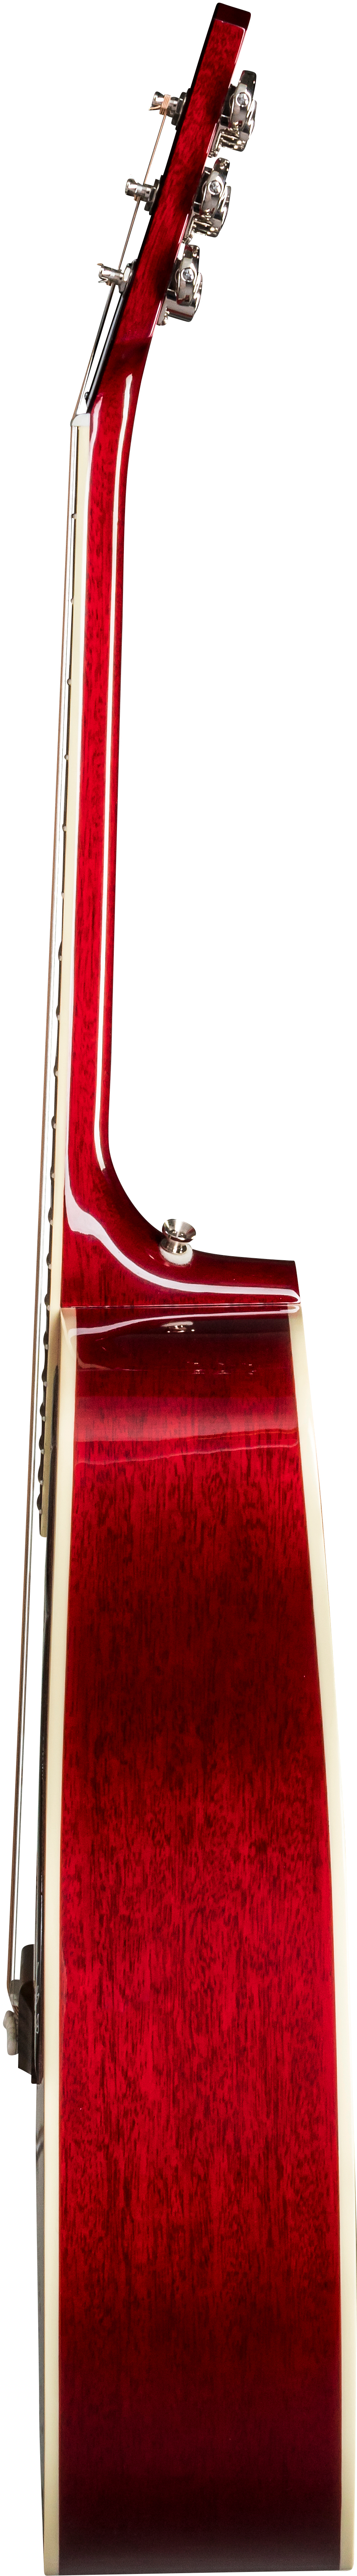 Gibson Hummingbird 2019 Dreadnought Epicea Acajou Rw - Vintage Cherry Sunburst - Acoustic guitar & electro - Variation 3